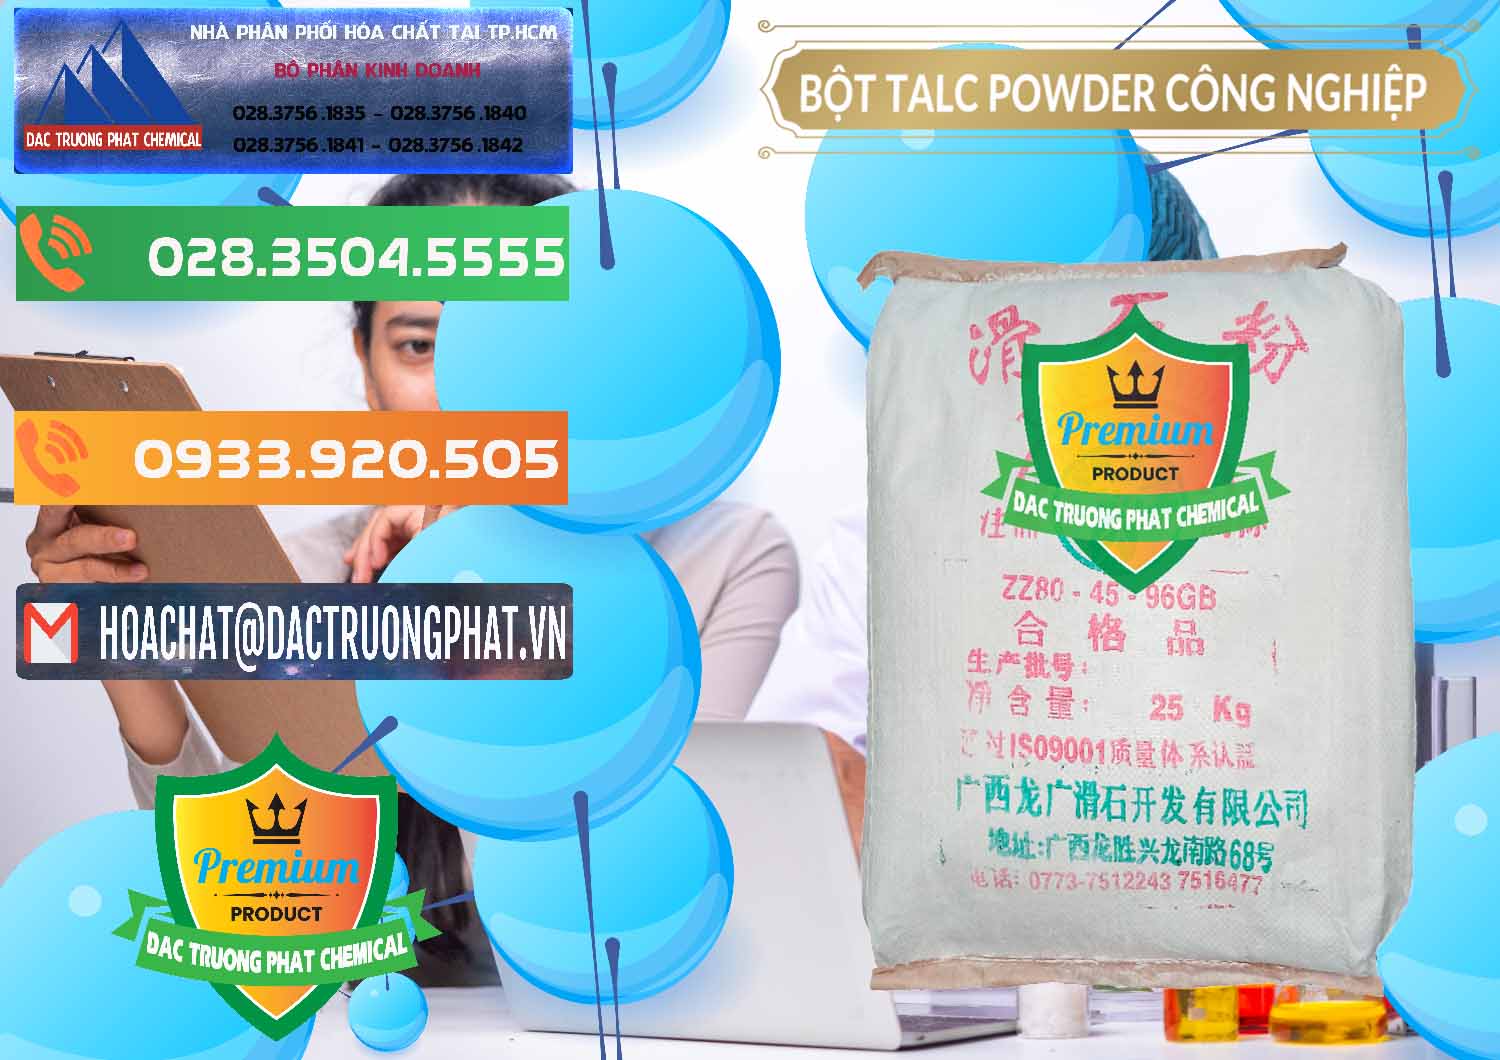 Cty chuyên cung cấp & bán Bột Talc Powder Công Nghiệp Trung Quốc China - 0037 - Đơn vị chuyên nhập khẩu ( cung cấp ) hóa chất tại TP.HCM - hoachatxulynuoc.com.vn